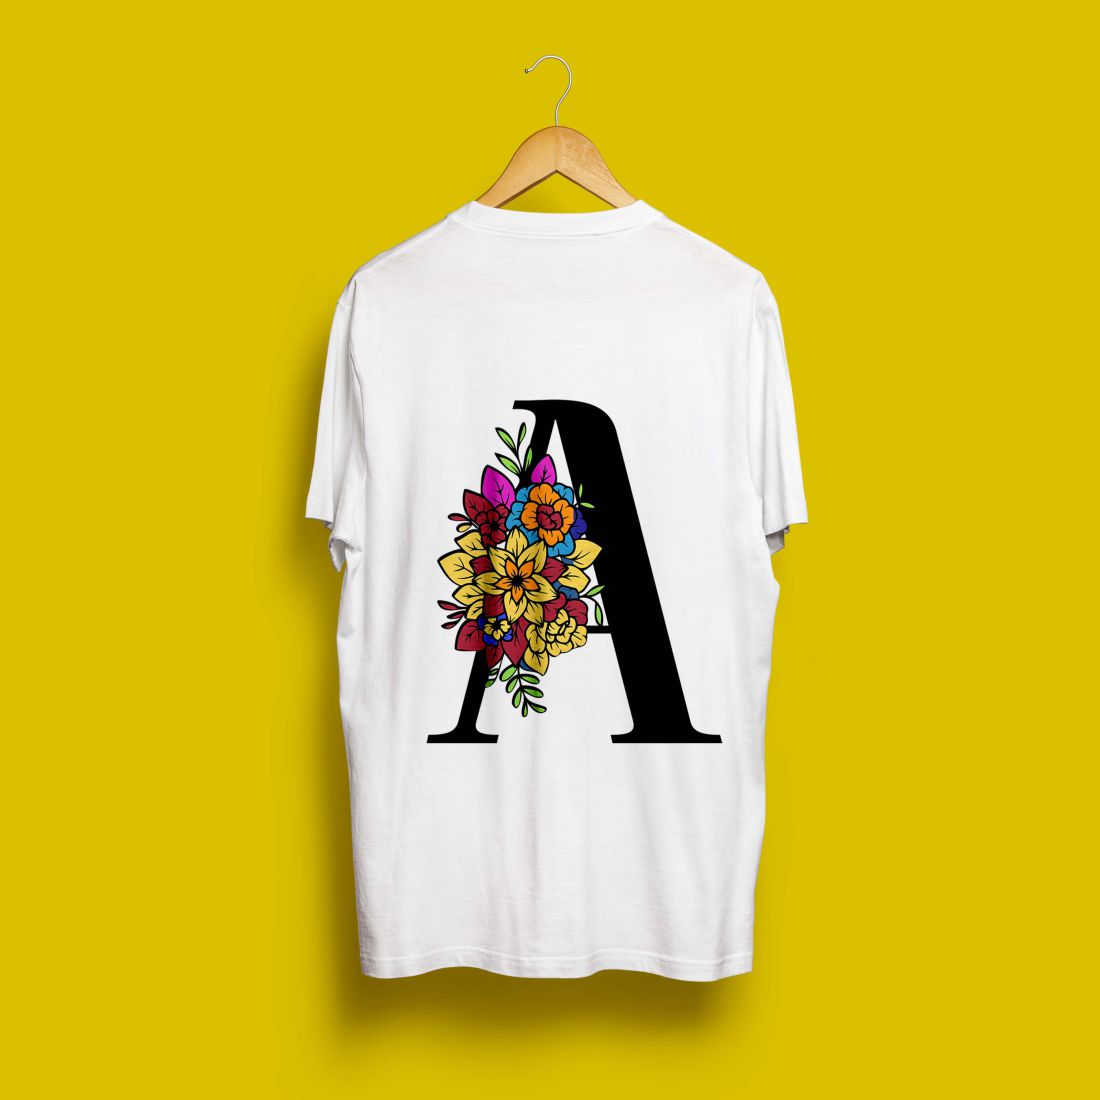 Flower T Shirt Designs Bundle LETTER A cover image.